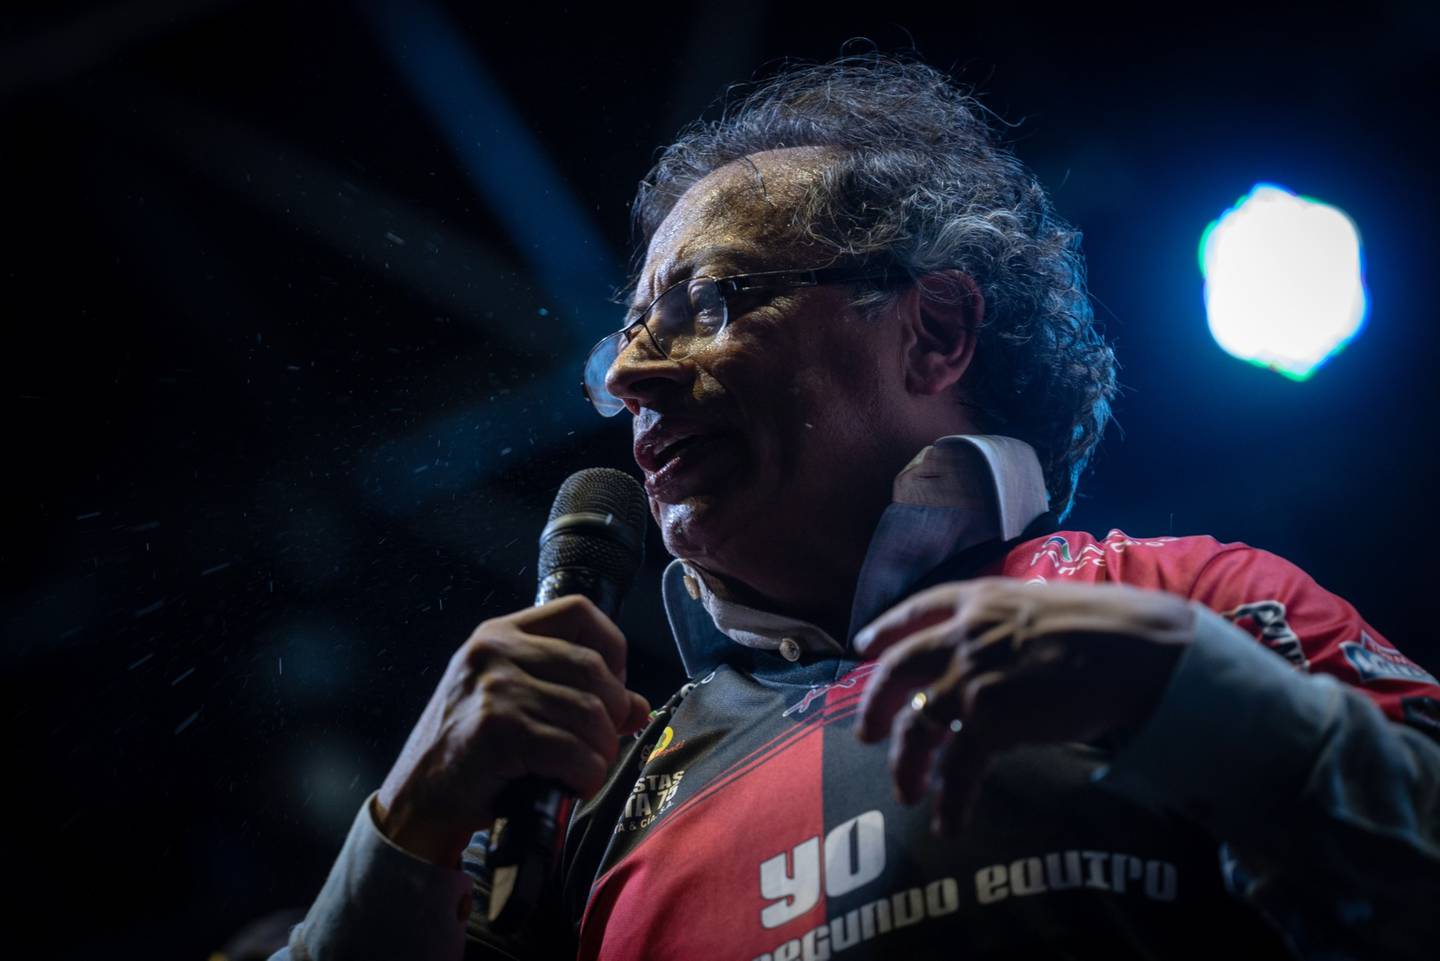 El candidato presidencial del partido Colombia Humana habla durante un acto de campaña en Cúcuta, Colombia, el jueves 5 de mayo de 2022.